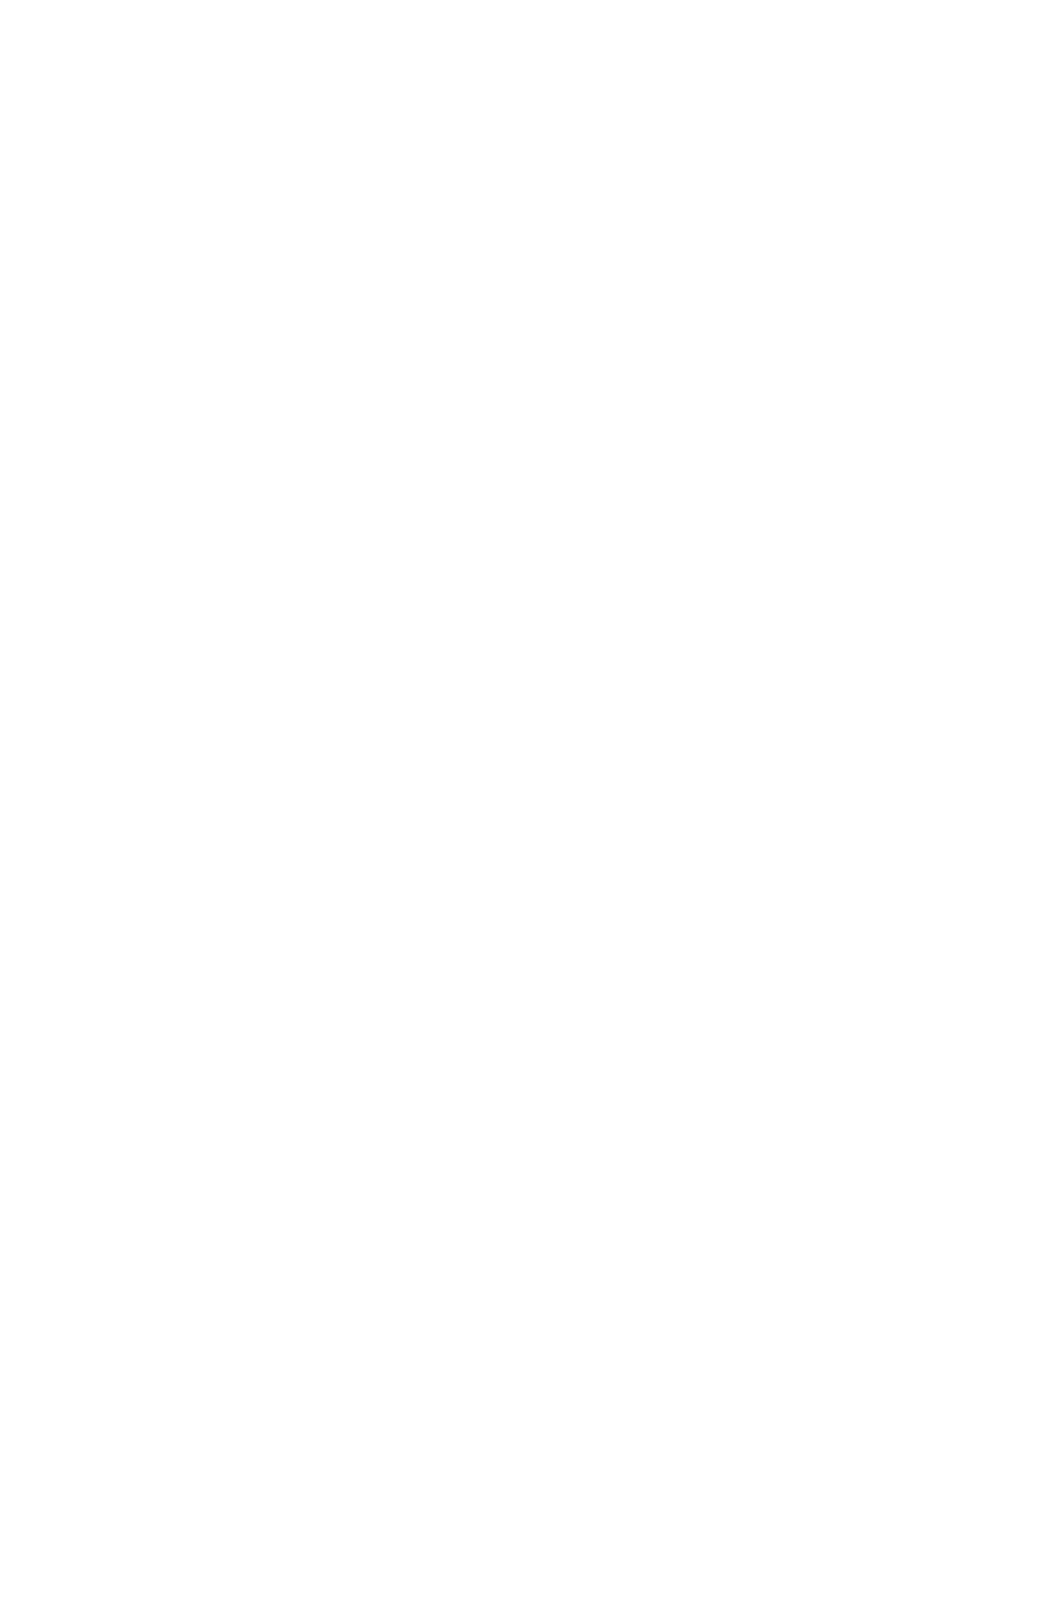 尾崎裕哉 SKY-HIとのコラボ曲『ハリアッ!!』配信スタート&MV解禁サムネイル画像!